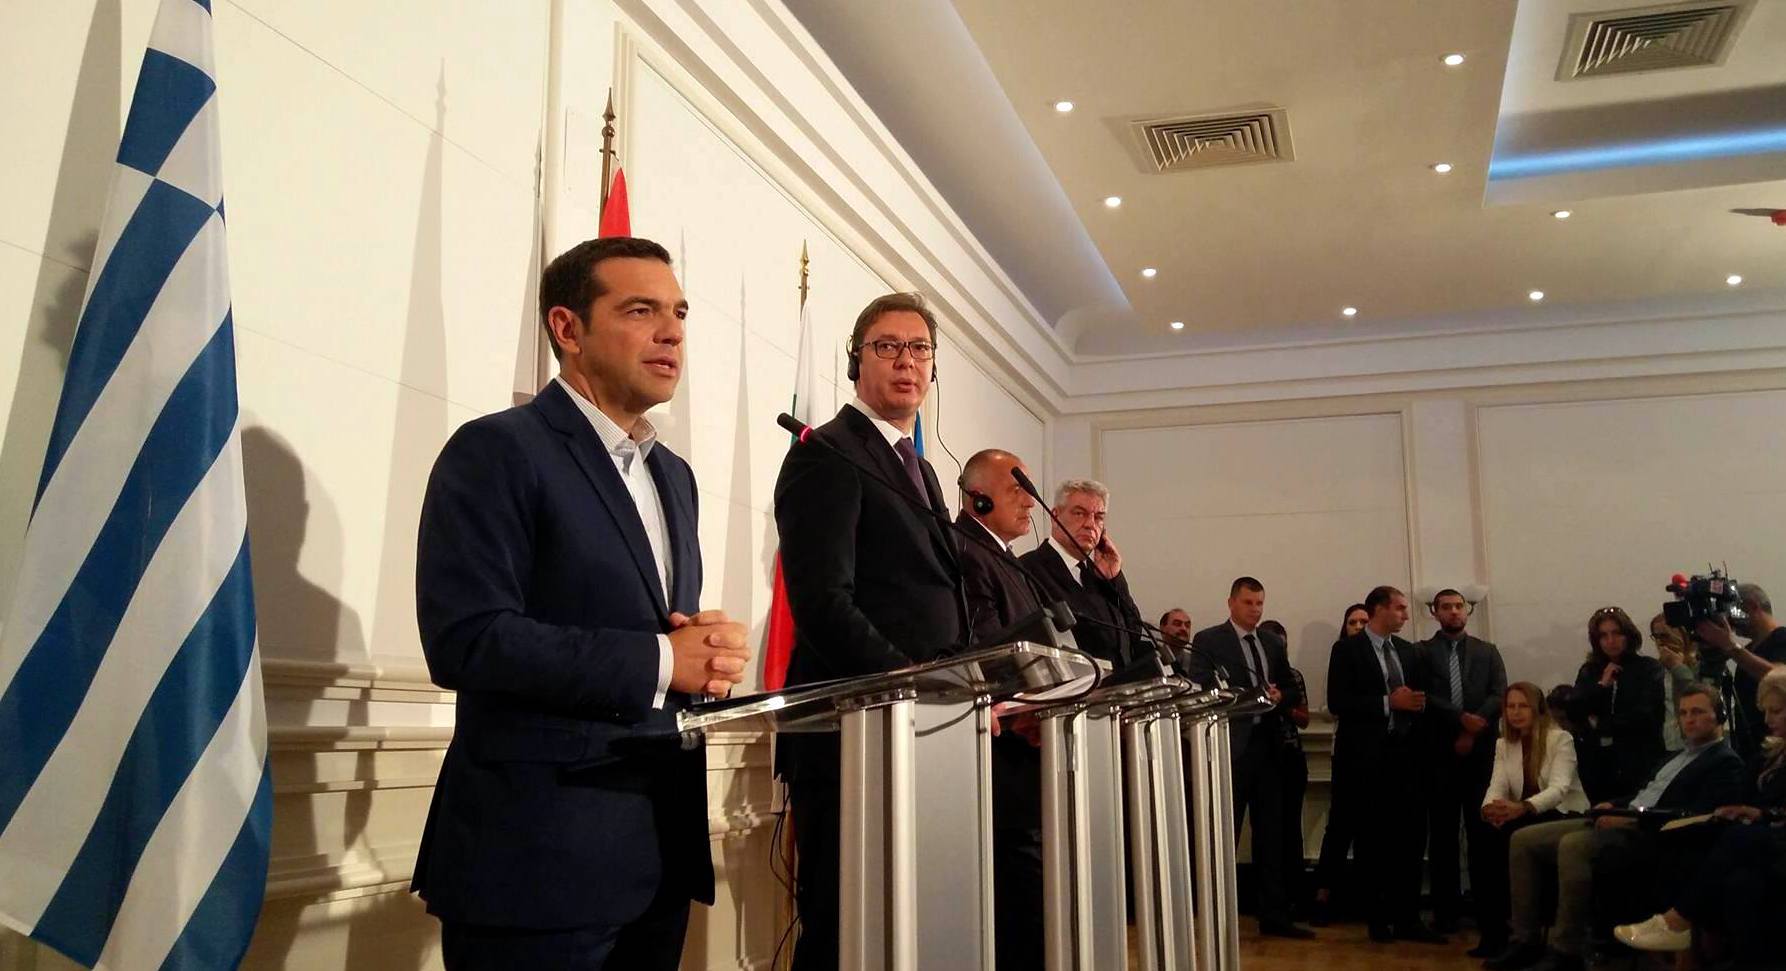 Δηλώσεις Αλ. Τσίπρα στην Τετραμερή Σύνοδο: «Η συμφωνία με τα Σκόπια προσφέρει νέες προοπτικές στην περιοχή»